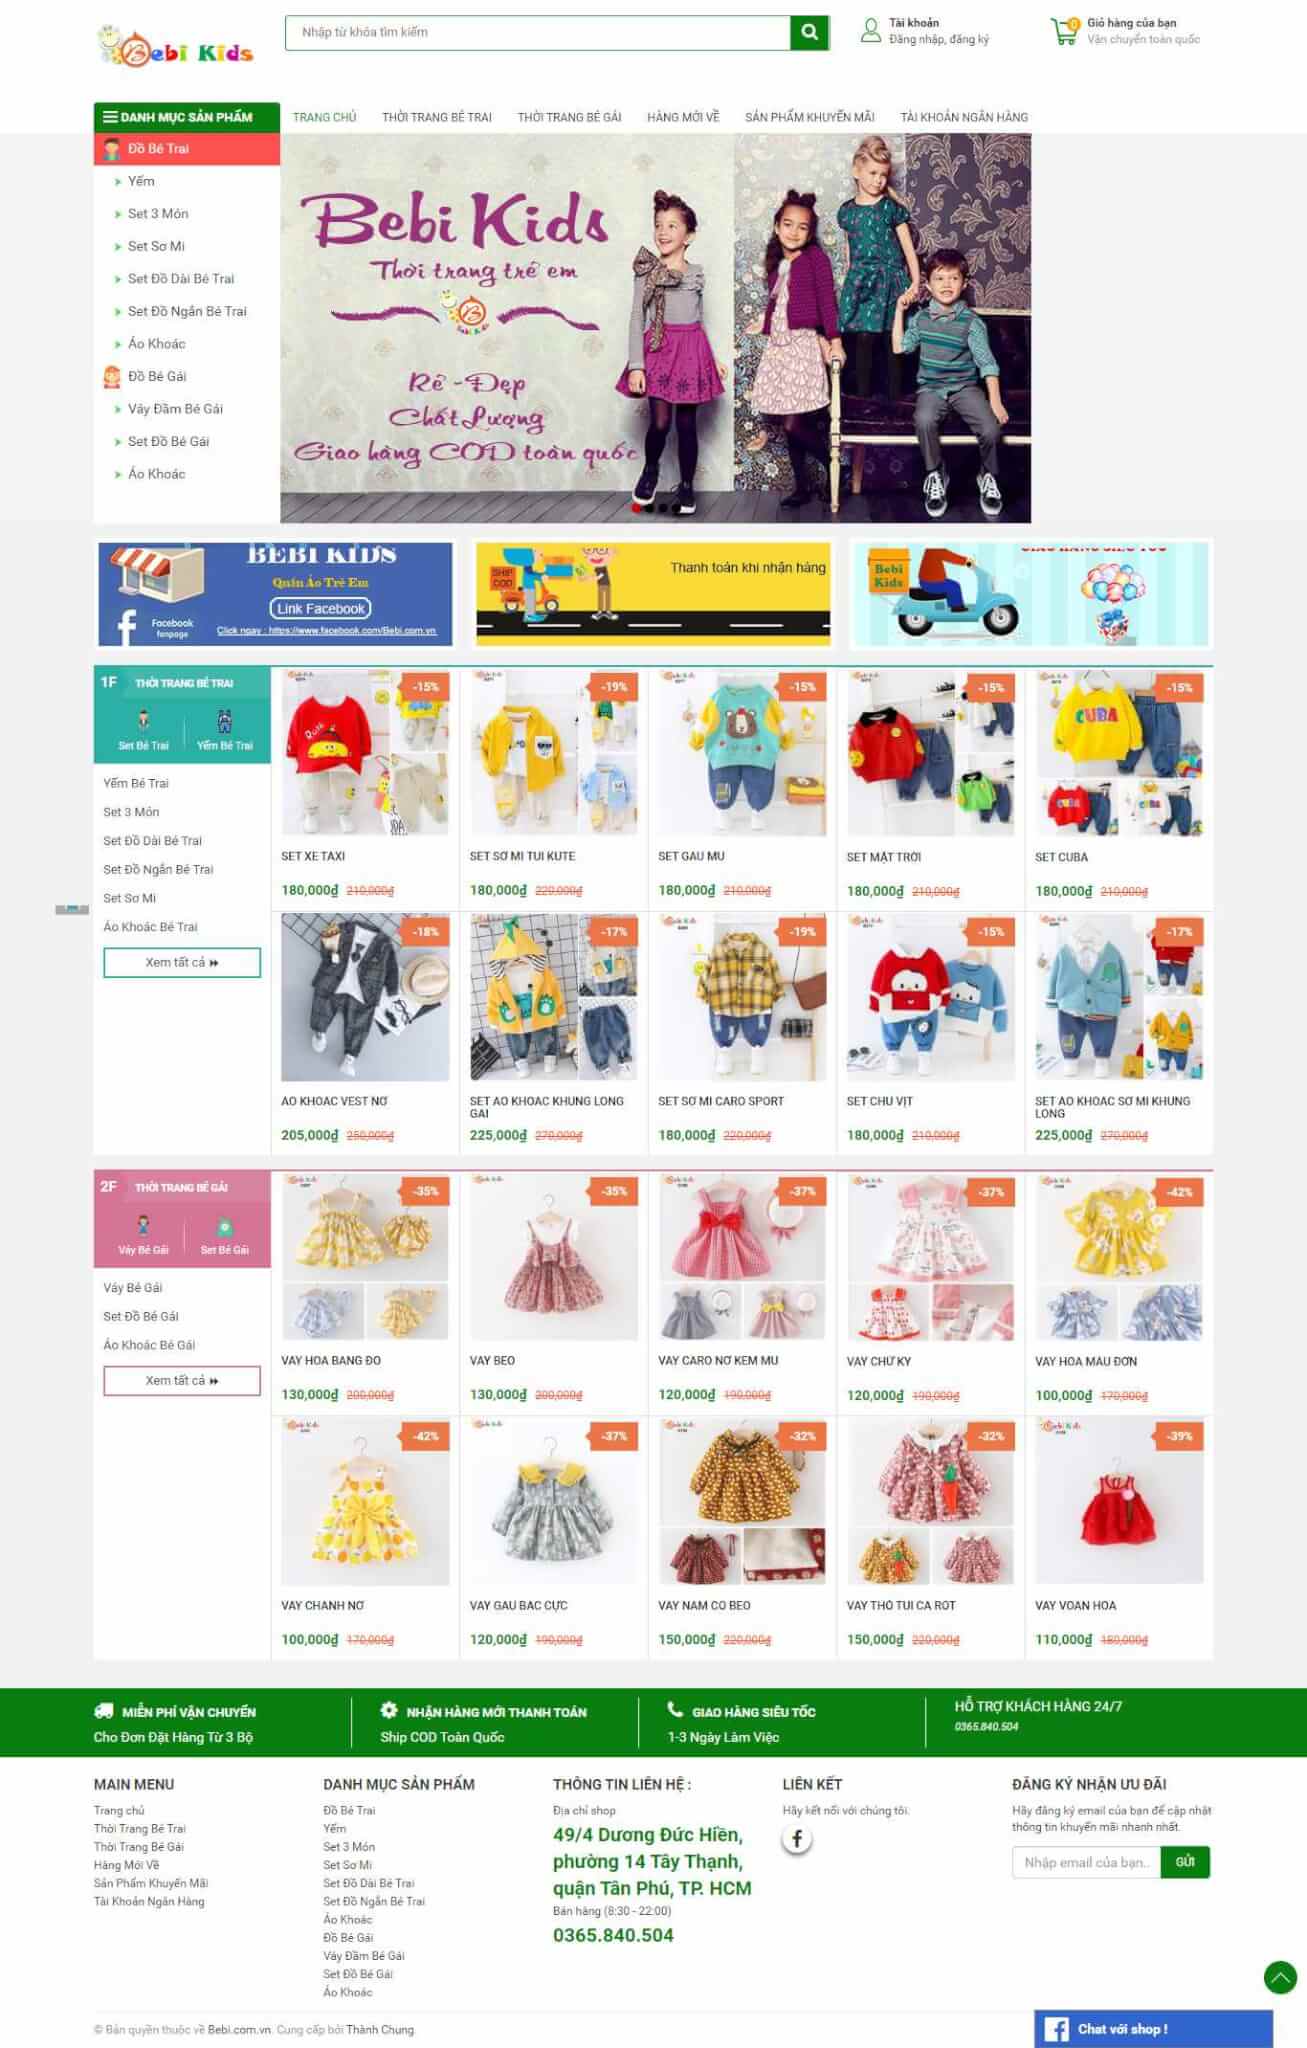 Tăng doanh thu với thiết kế website áo quần trẻ em chuyên nghiệp 4